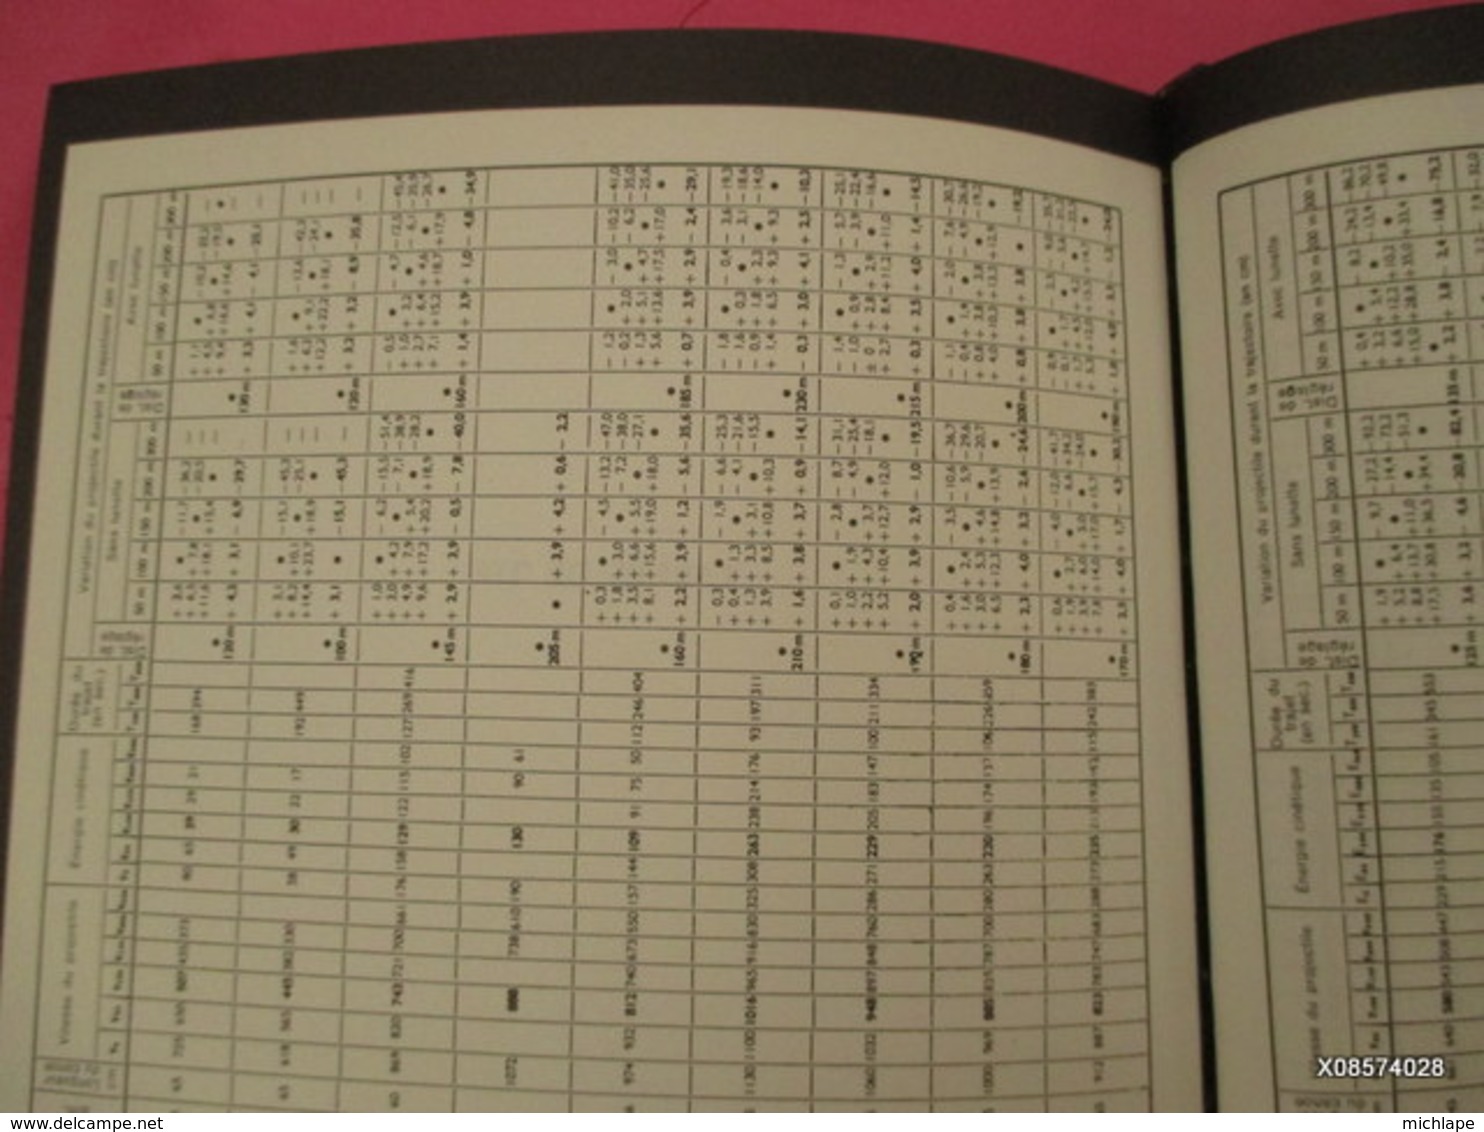 le livre des armes relié  D. VENNER  format 18 cm X 21  - 310  pages - 1973- tres bon état proche du neuf